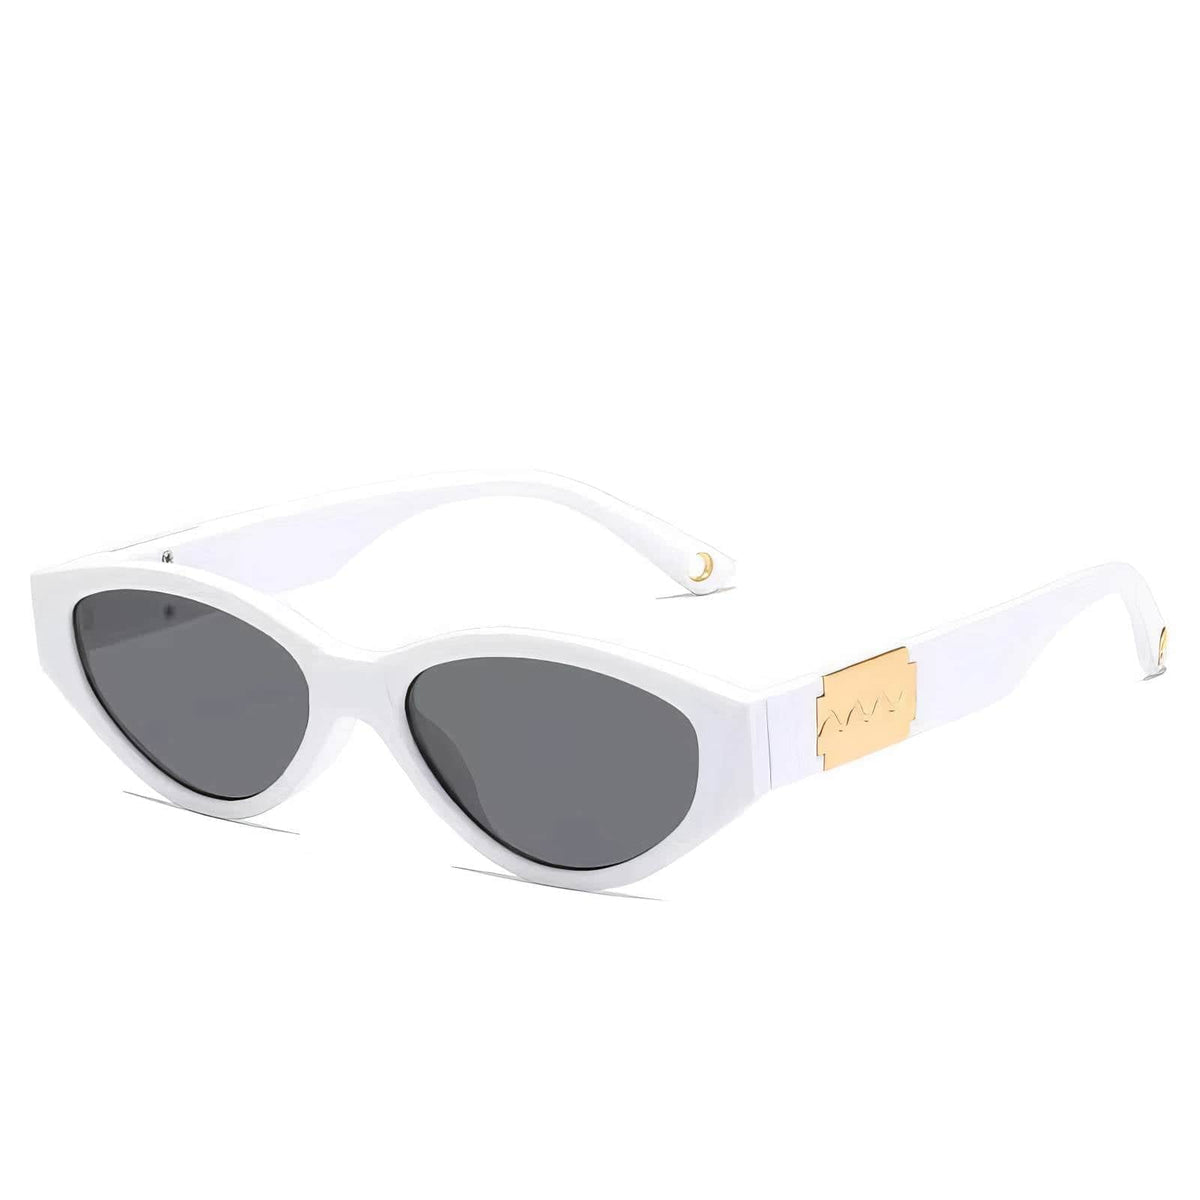 Fashion Trending Cat Eye Sunglasses White / Resin